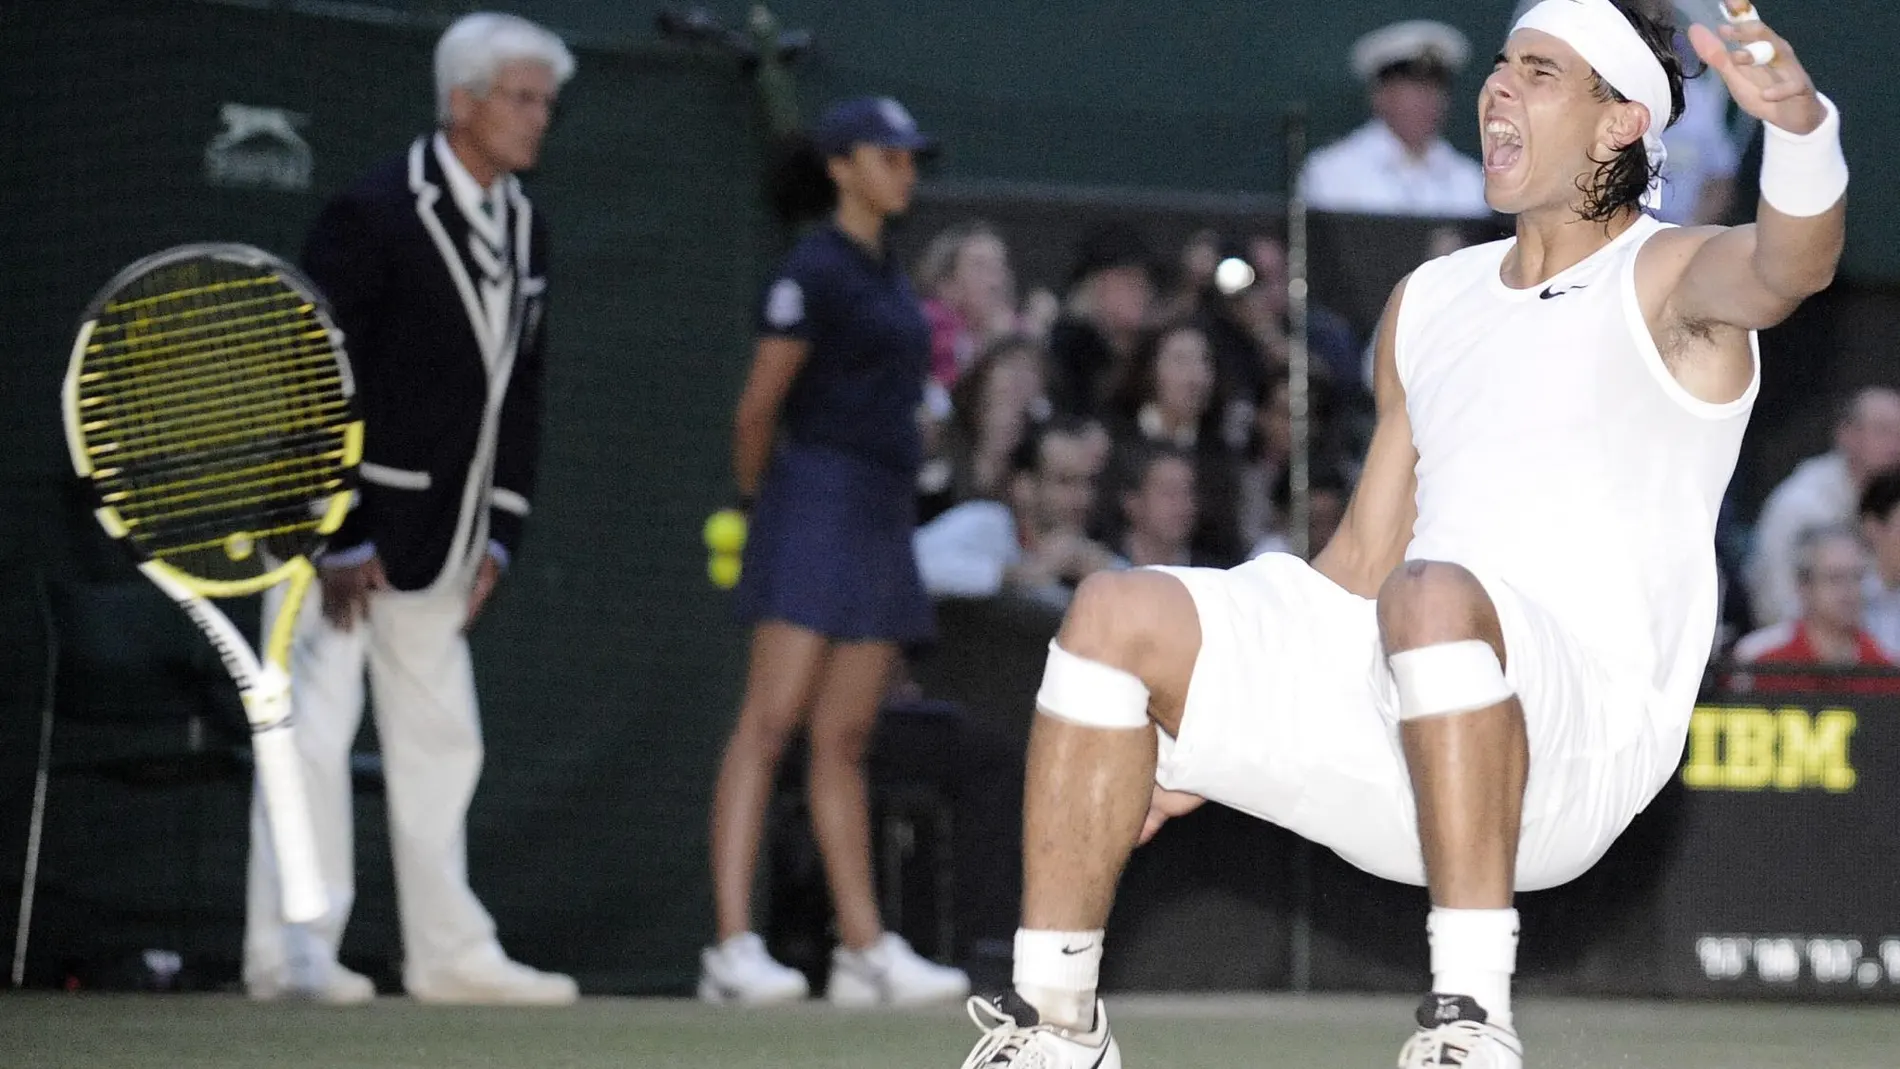 A qué hora y dónde ver el Nadal-Federer de Wimbledon